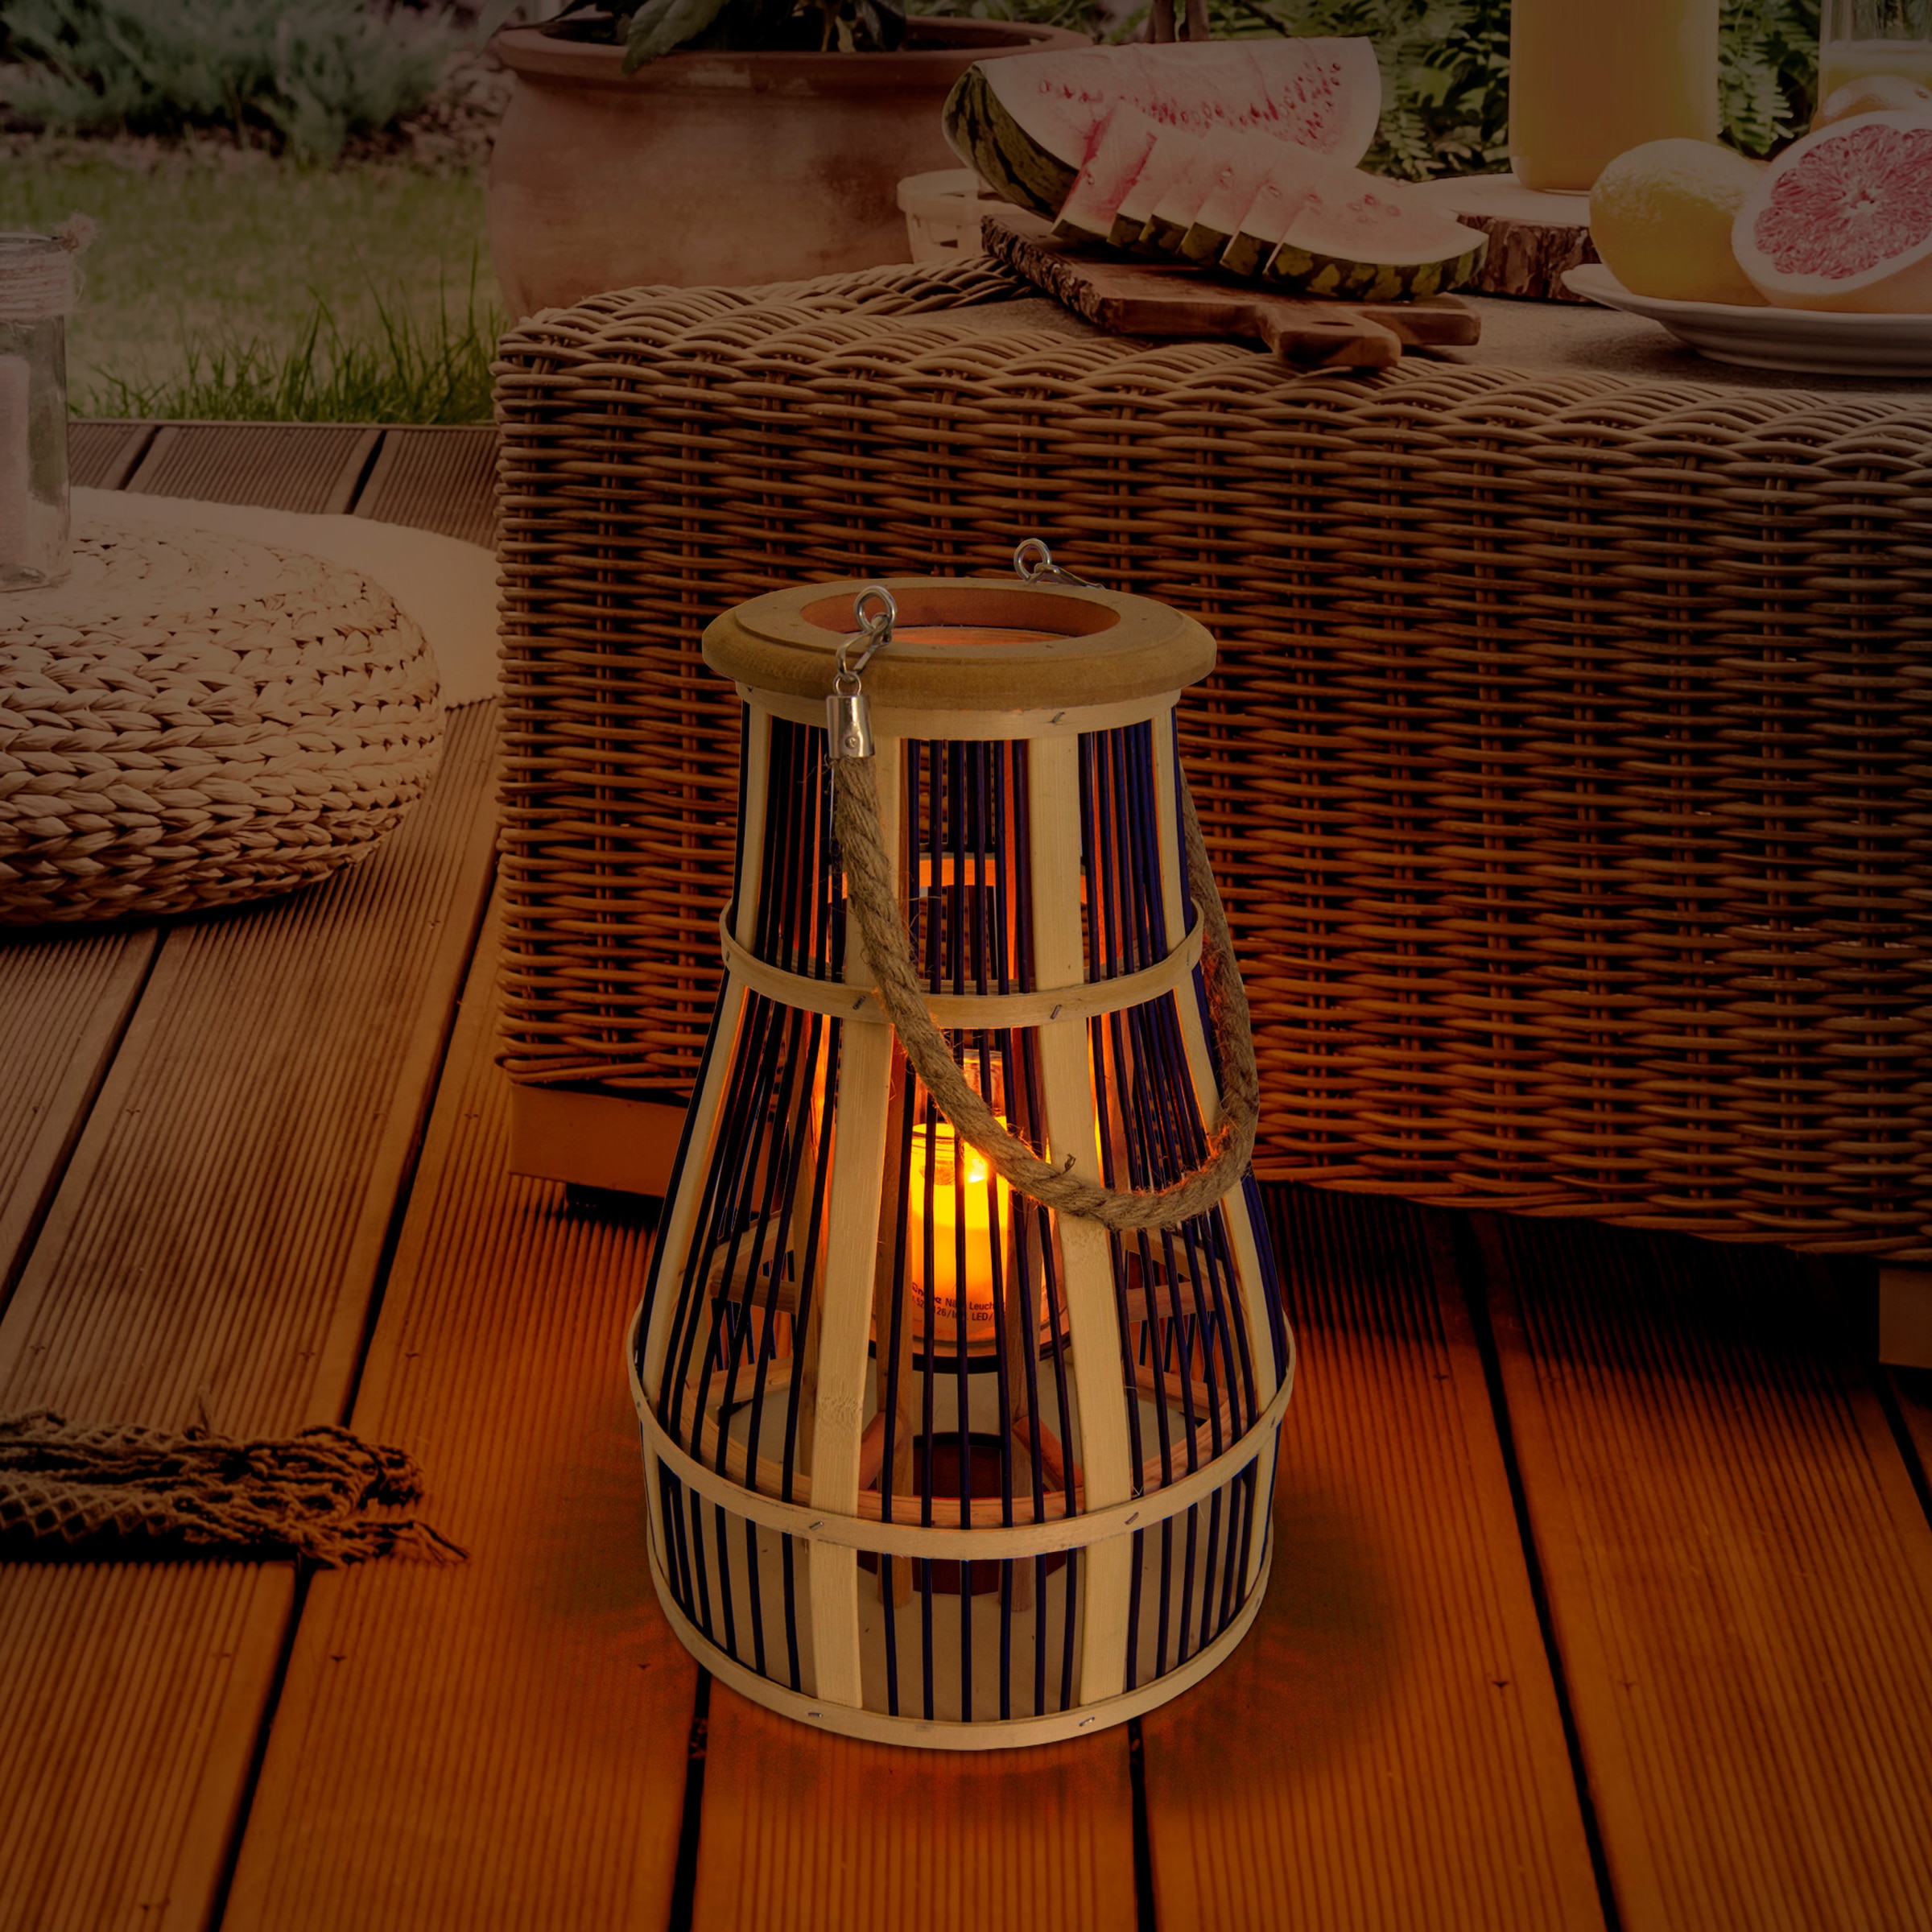 näve LED Solarleuchte »Korb«, 1 flammig-flammig, Flammeneffekt, Glaseinsatz für Teelicht, Material: Bambus/Jute/Glas